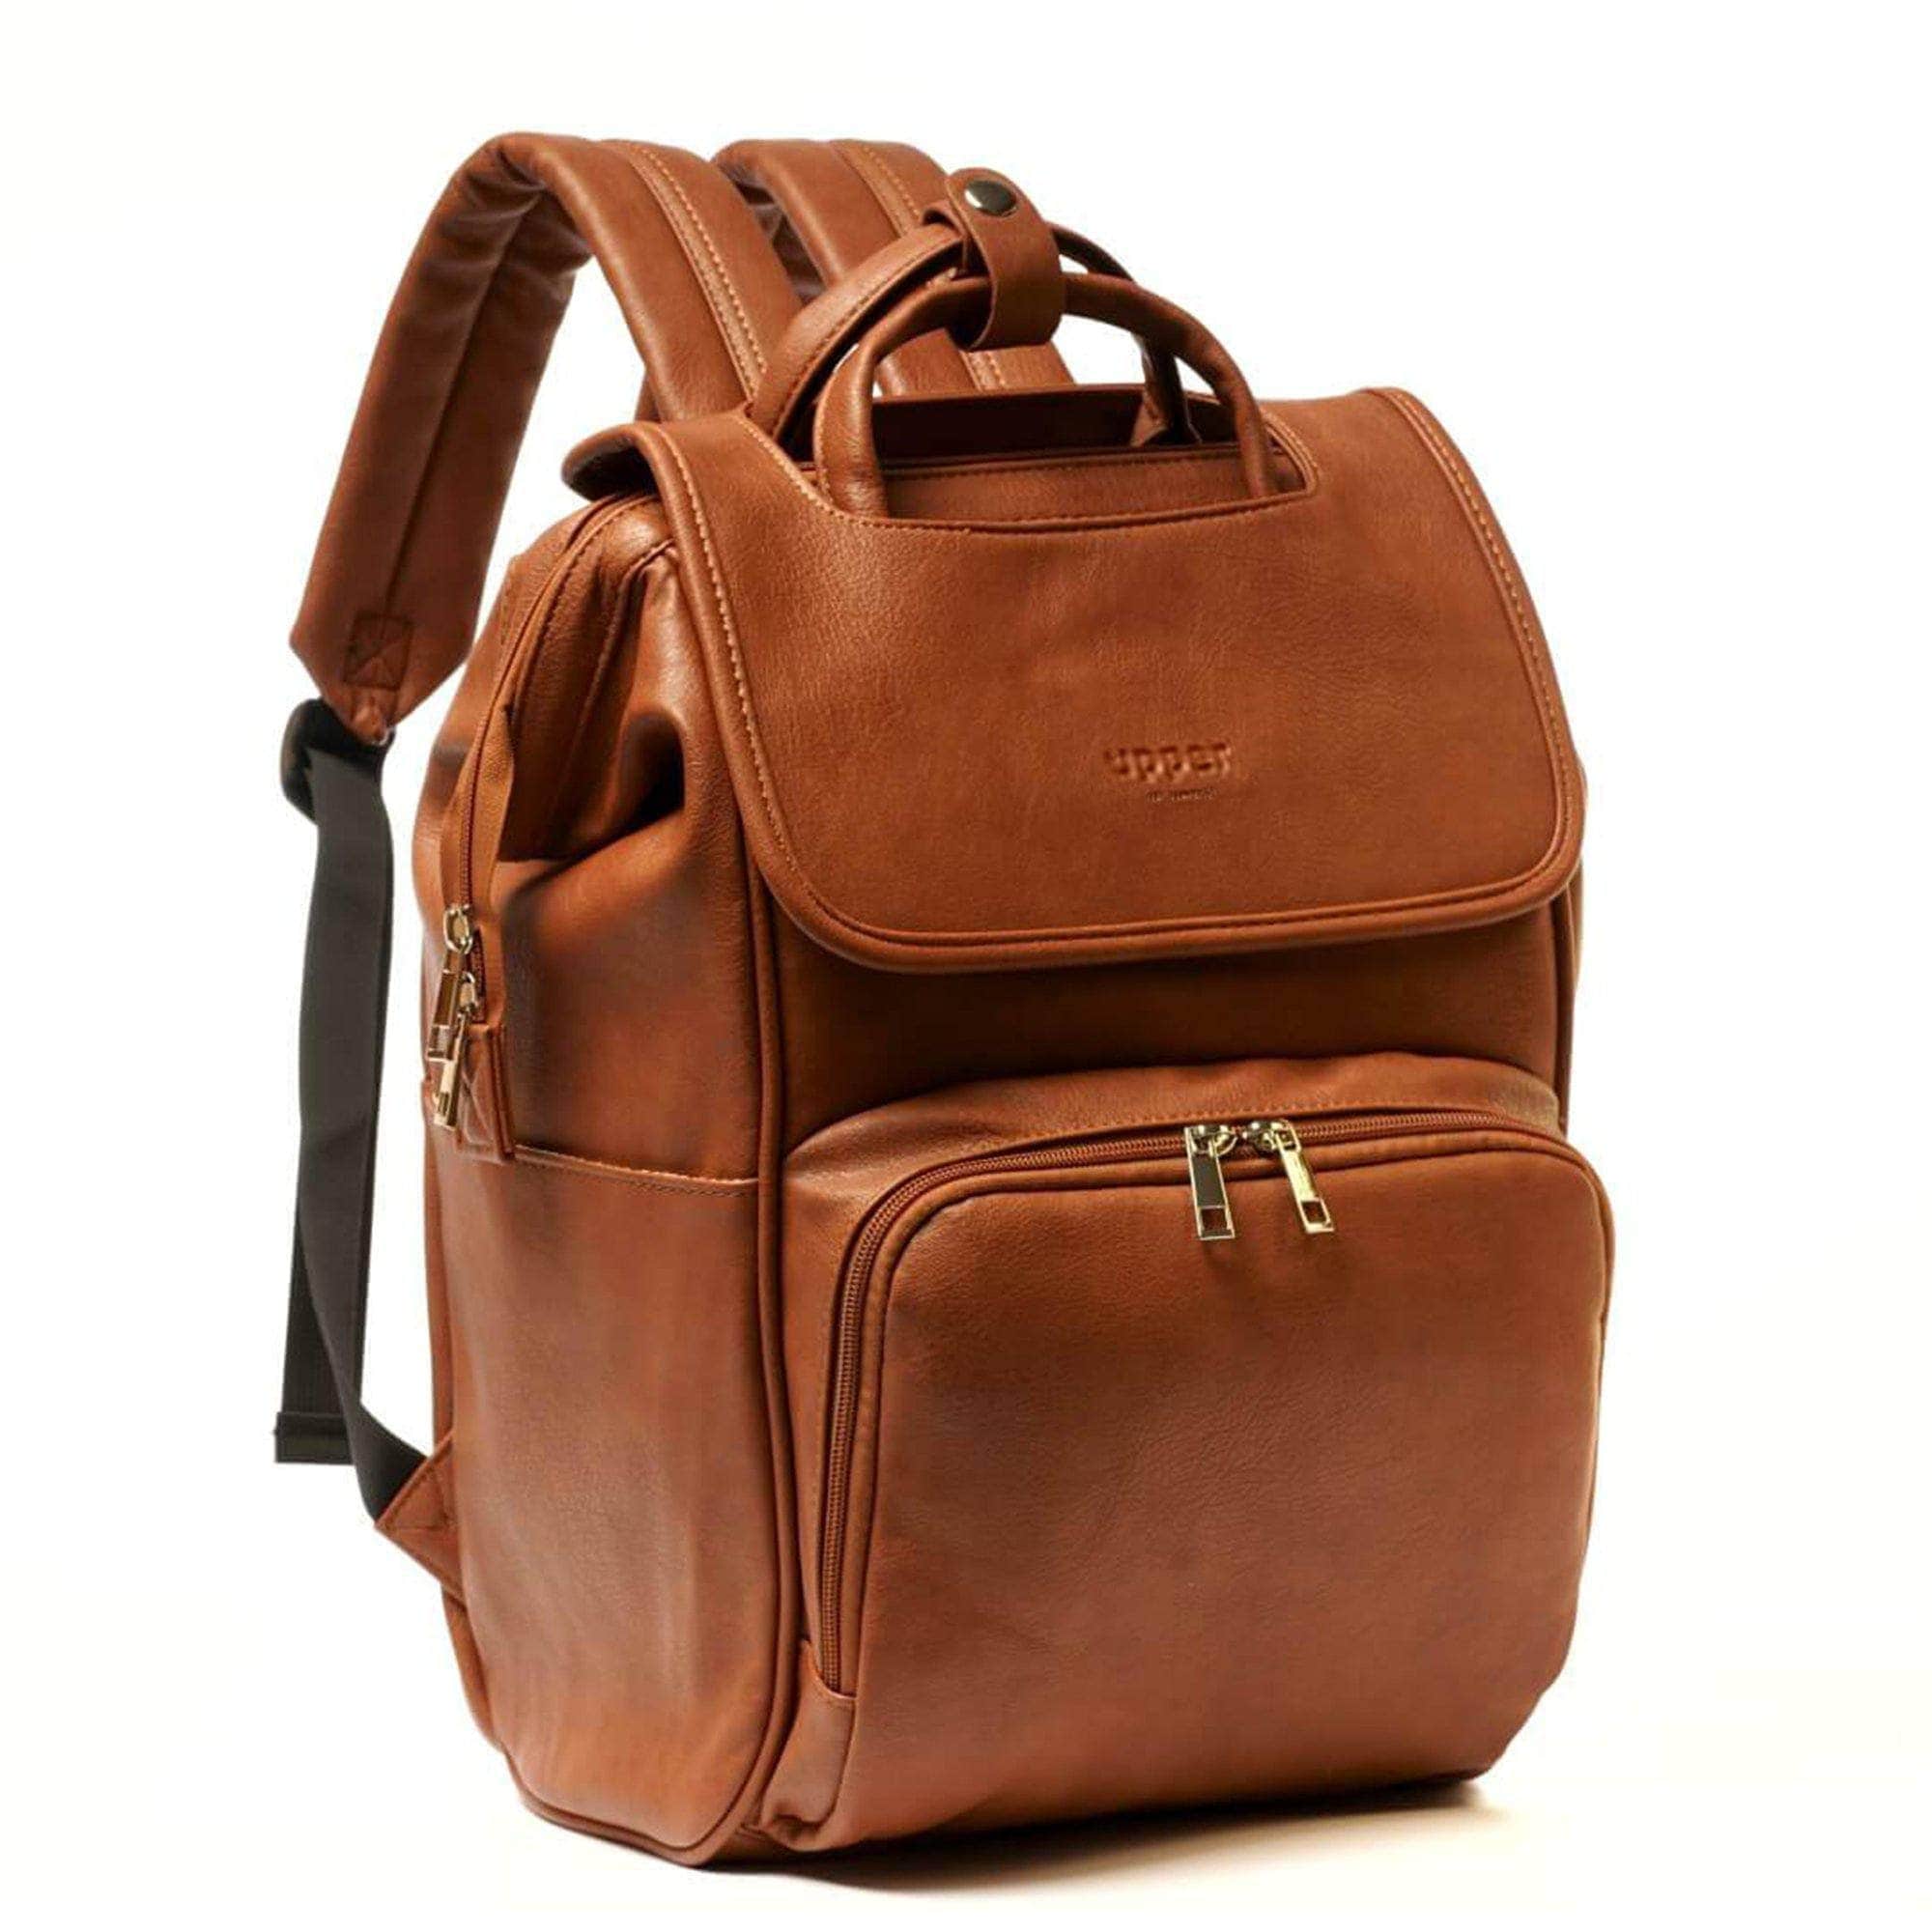 UPPER 549 - Luggage & Bags > Diaper Bags la-brown La Madison 2.0 - Elegant Vegan Leather Diaper Bag Backpack